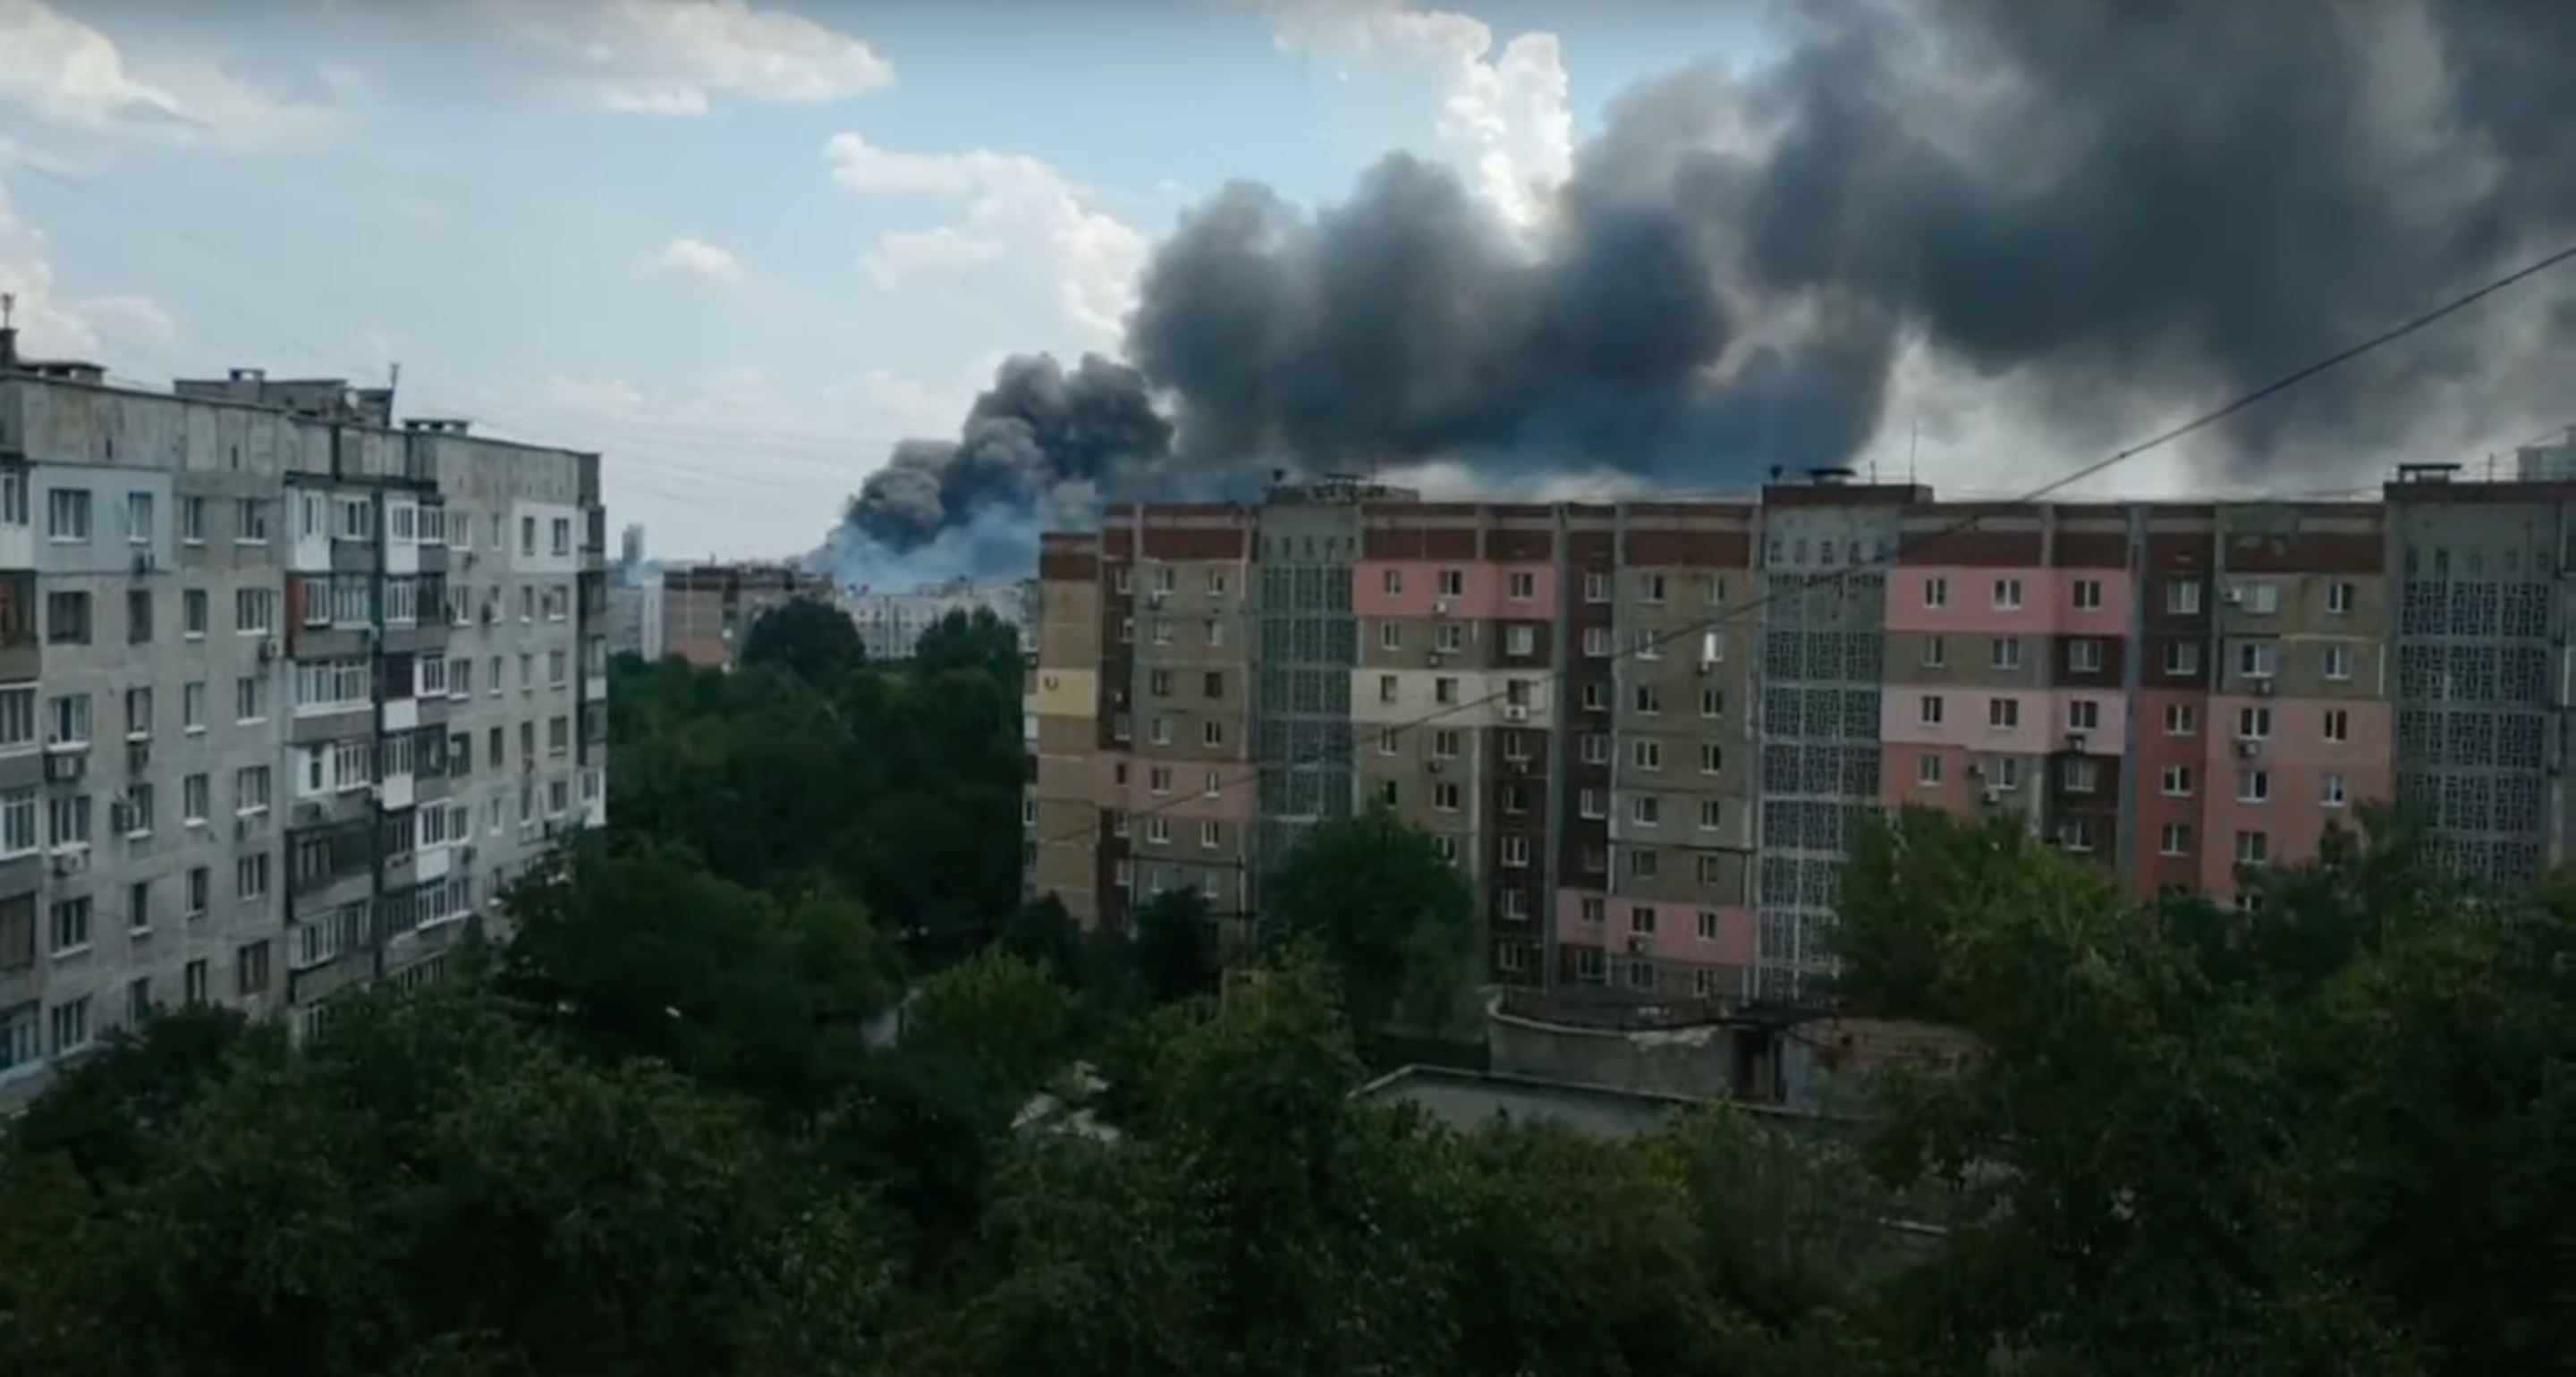 Ancora il lavoro dell'americano MLRS HIMARS? A Donetsk occupata, uno dei più grandi depositi di armi russi è in fiamme